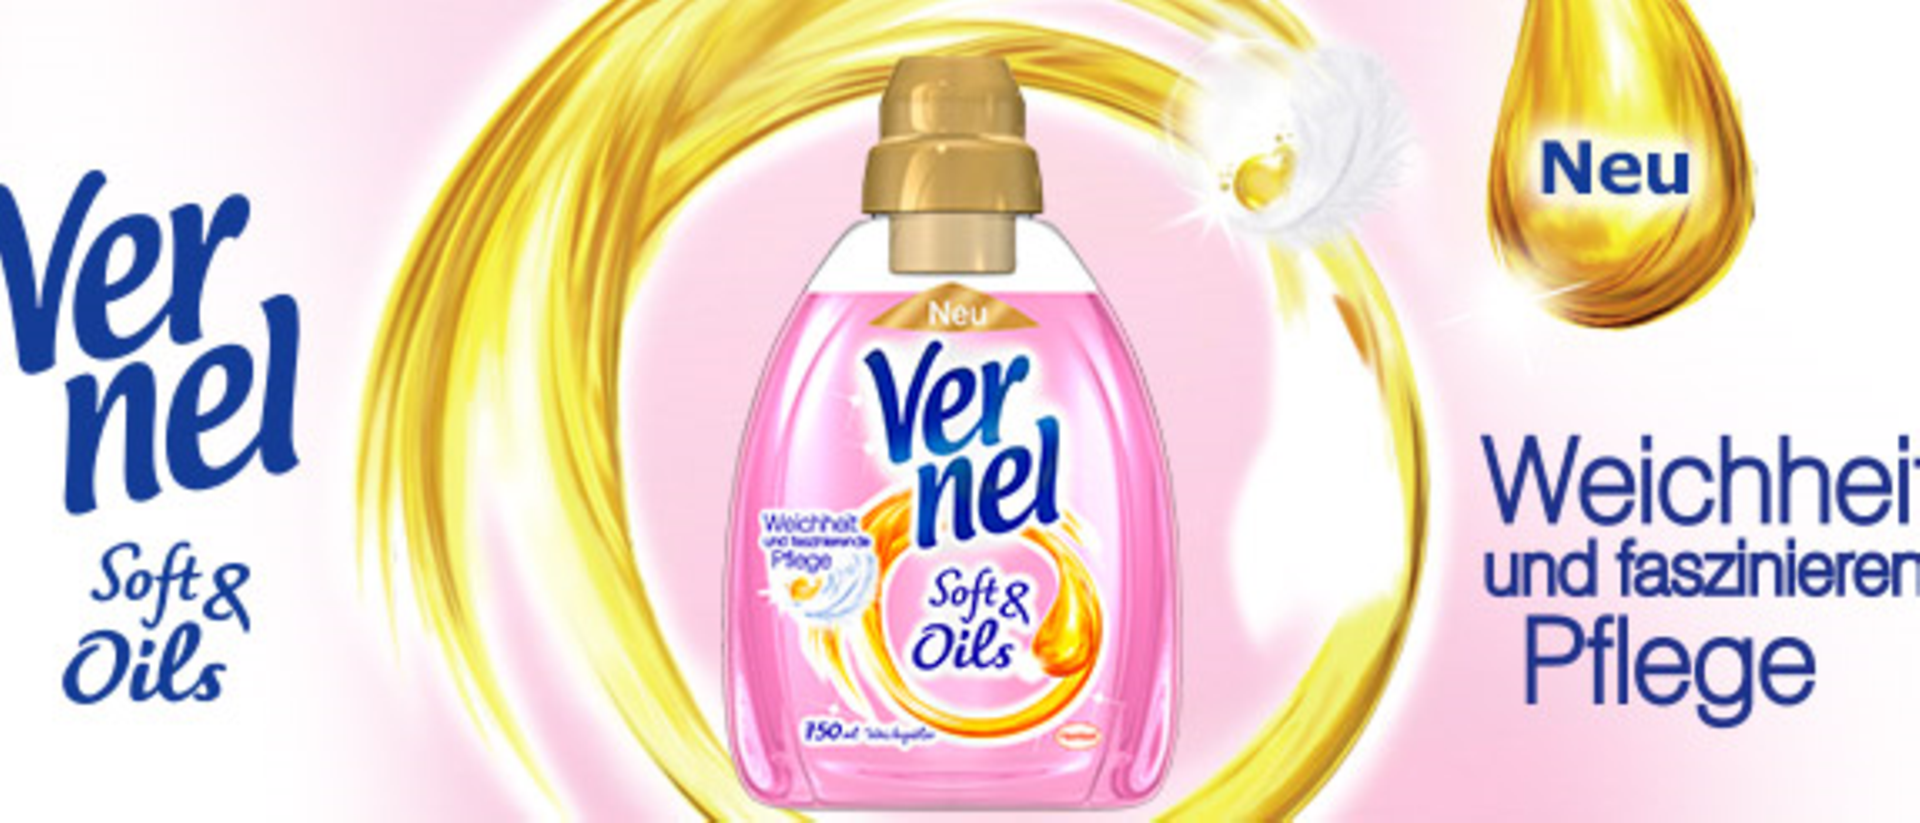 Vernel Soft & Oils Weichspüler für Weichheit und faszinierende Pflege